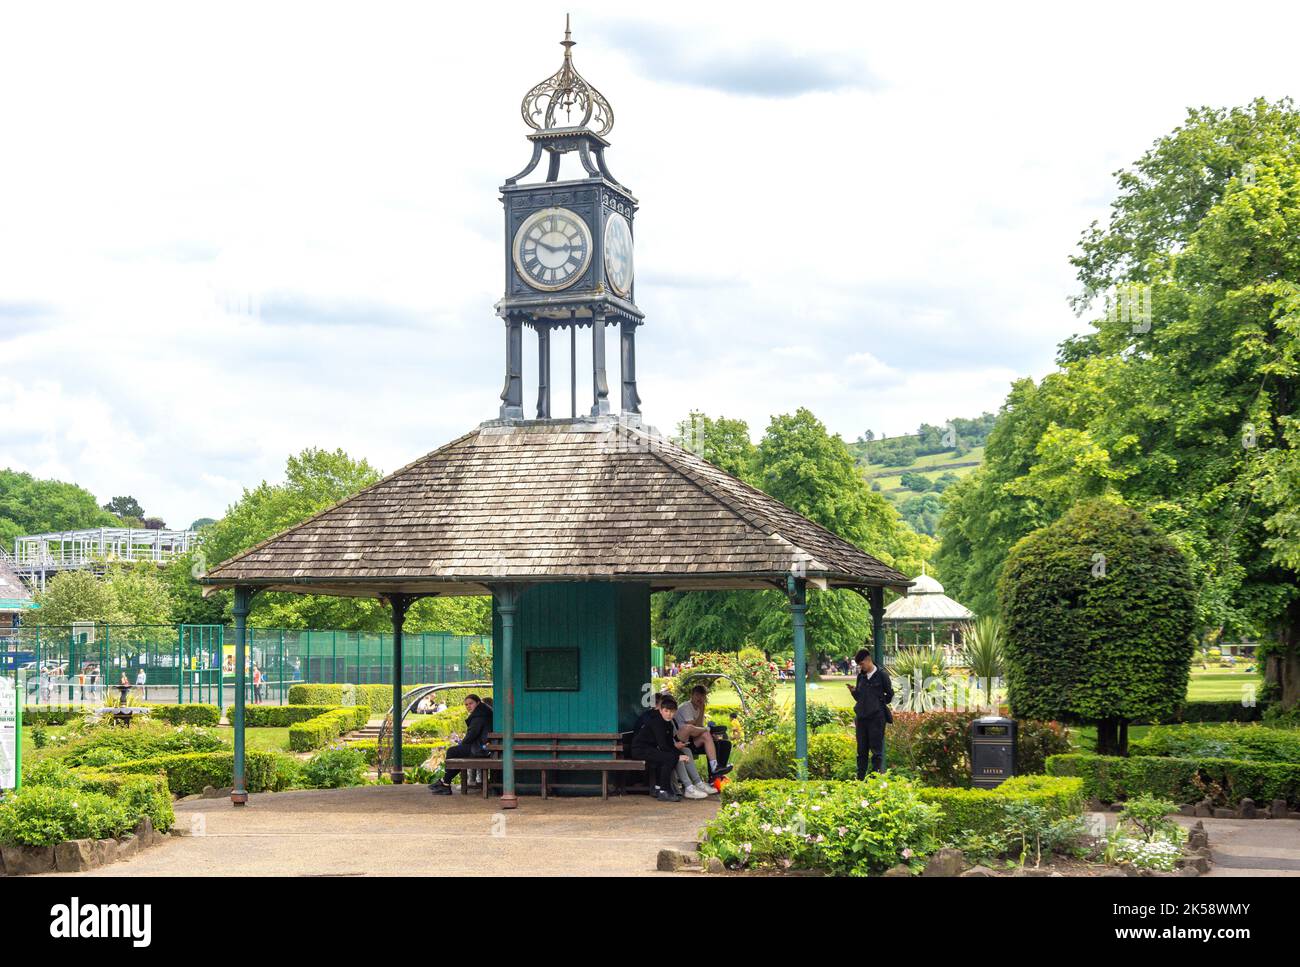 Padiglione della torre dell'orologio, Hall Leys Park, Matlock, Derbyshire, Inghilterra, Regno Unito Foto Stock